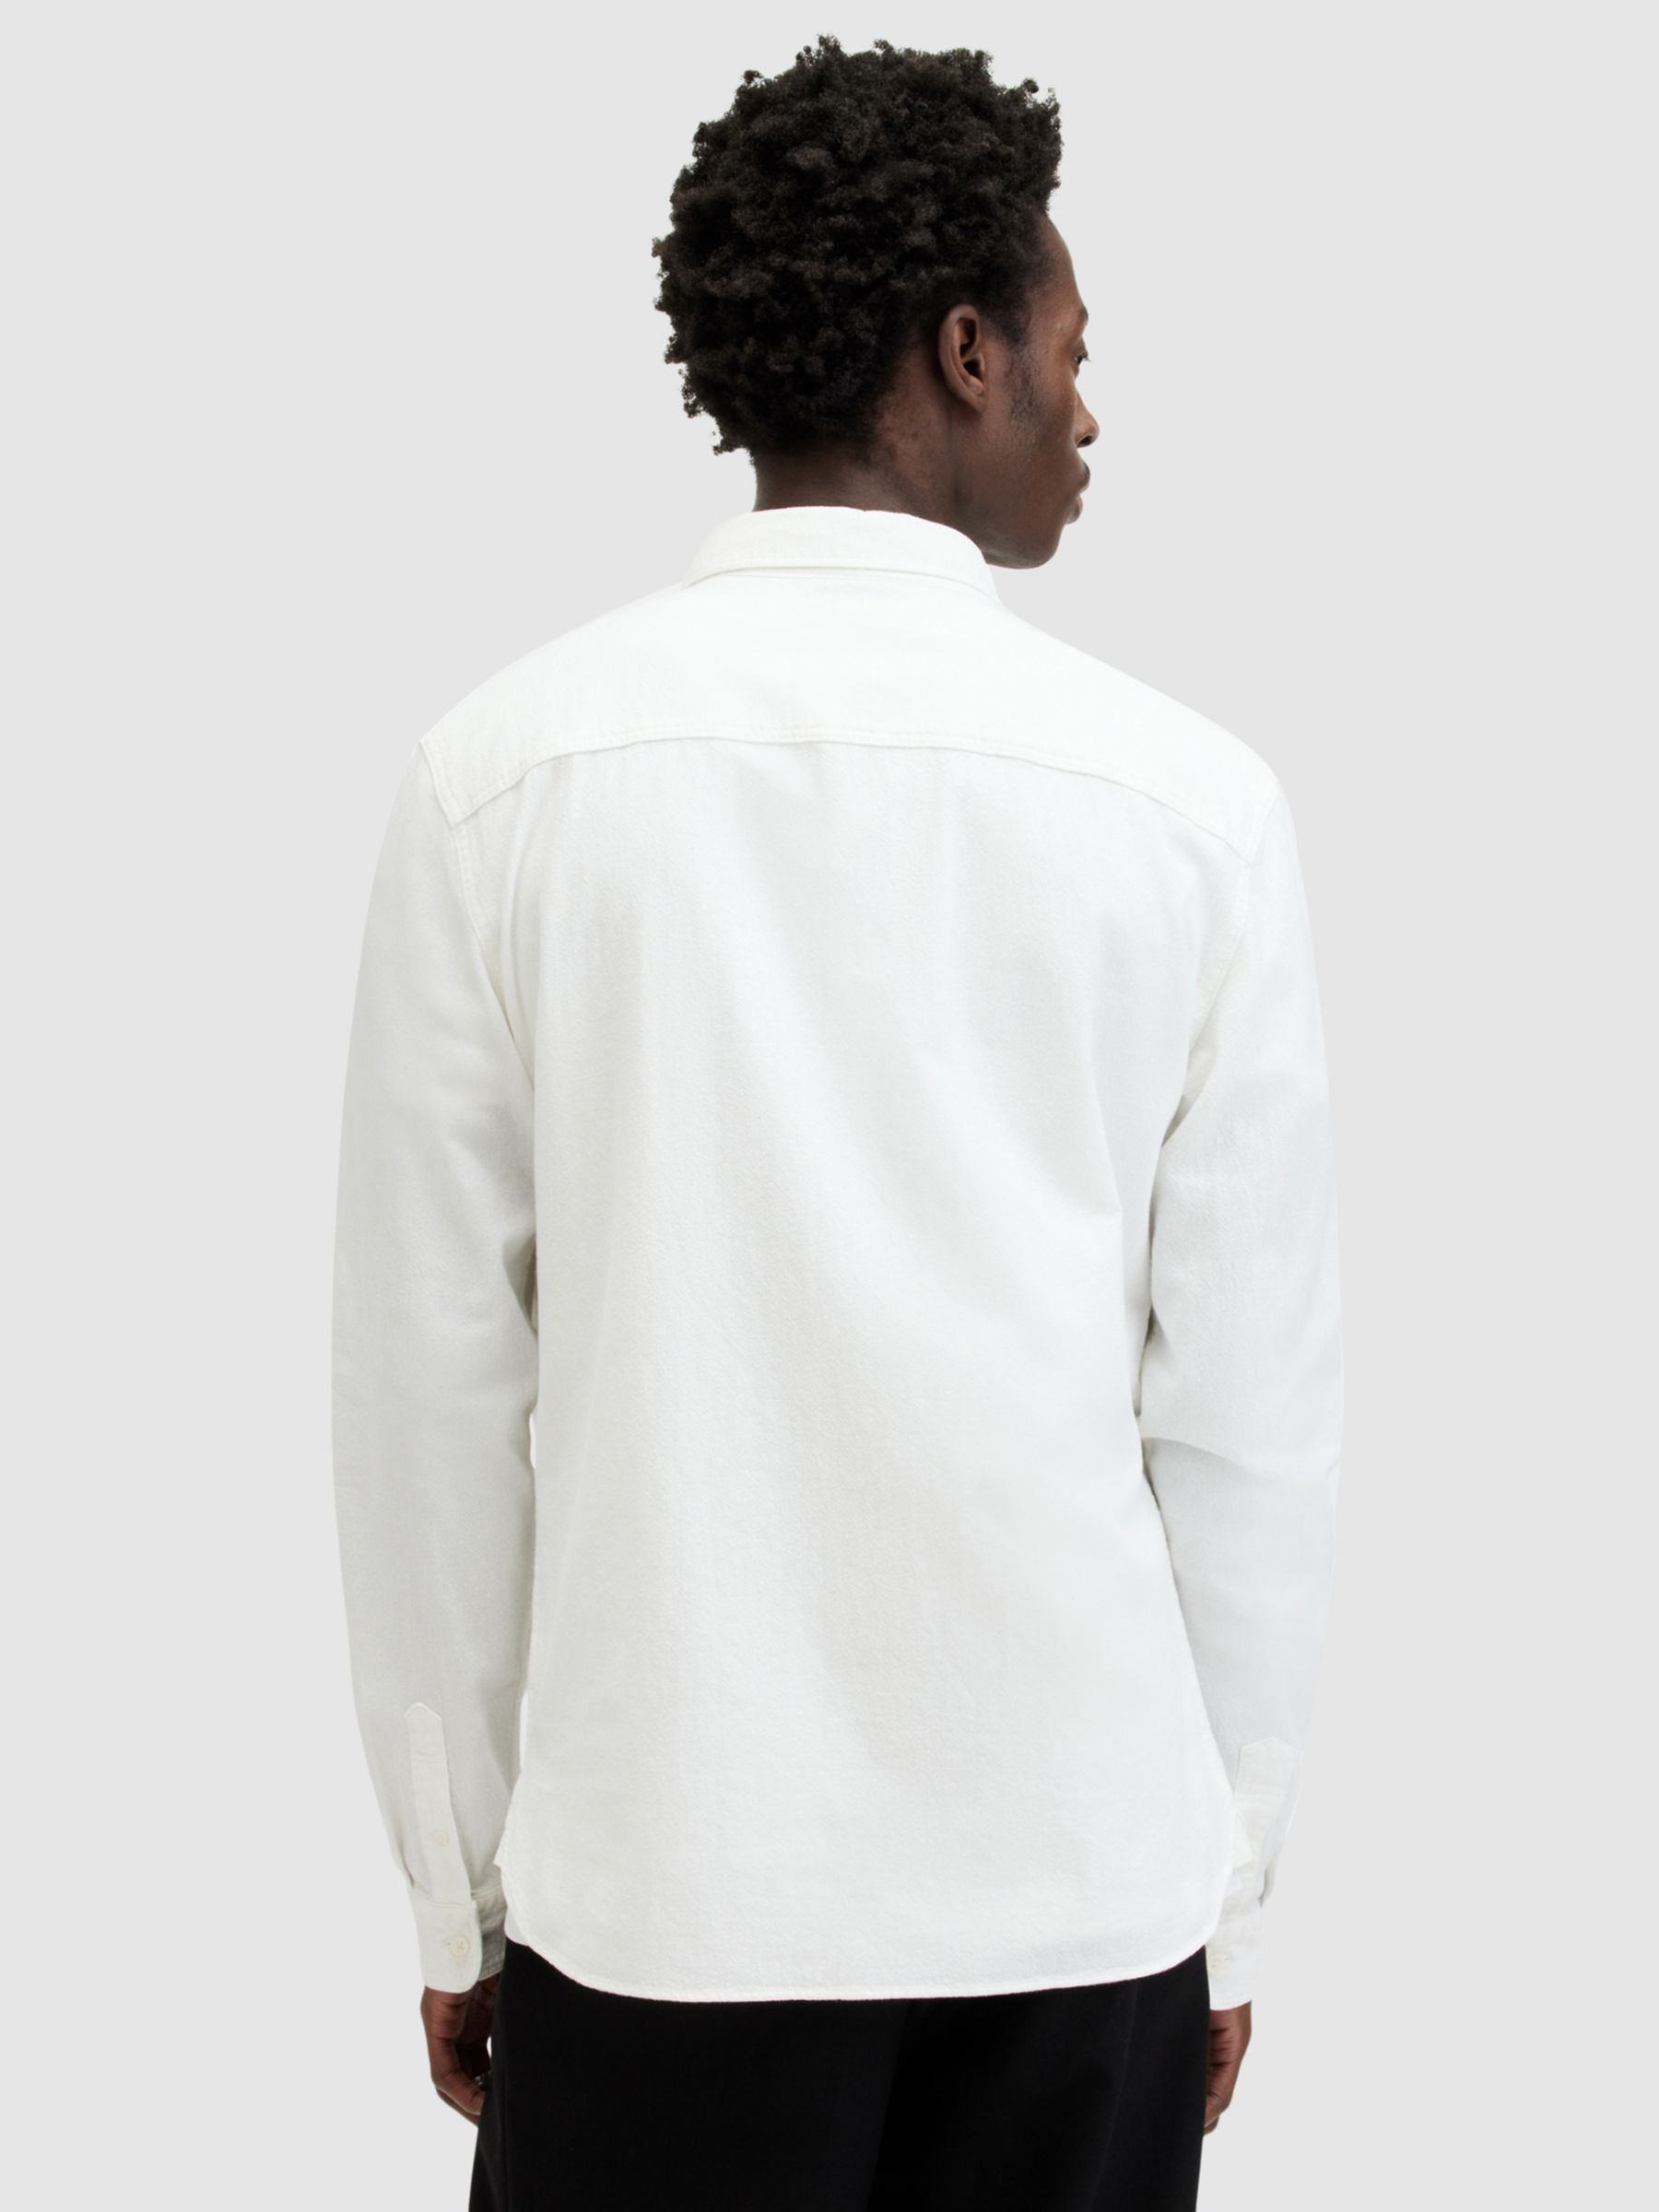 AllSaints Lovell Slim Fit Long Sleeve Shirt, White, XS